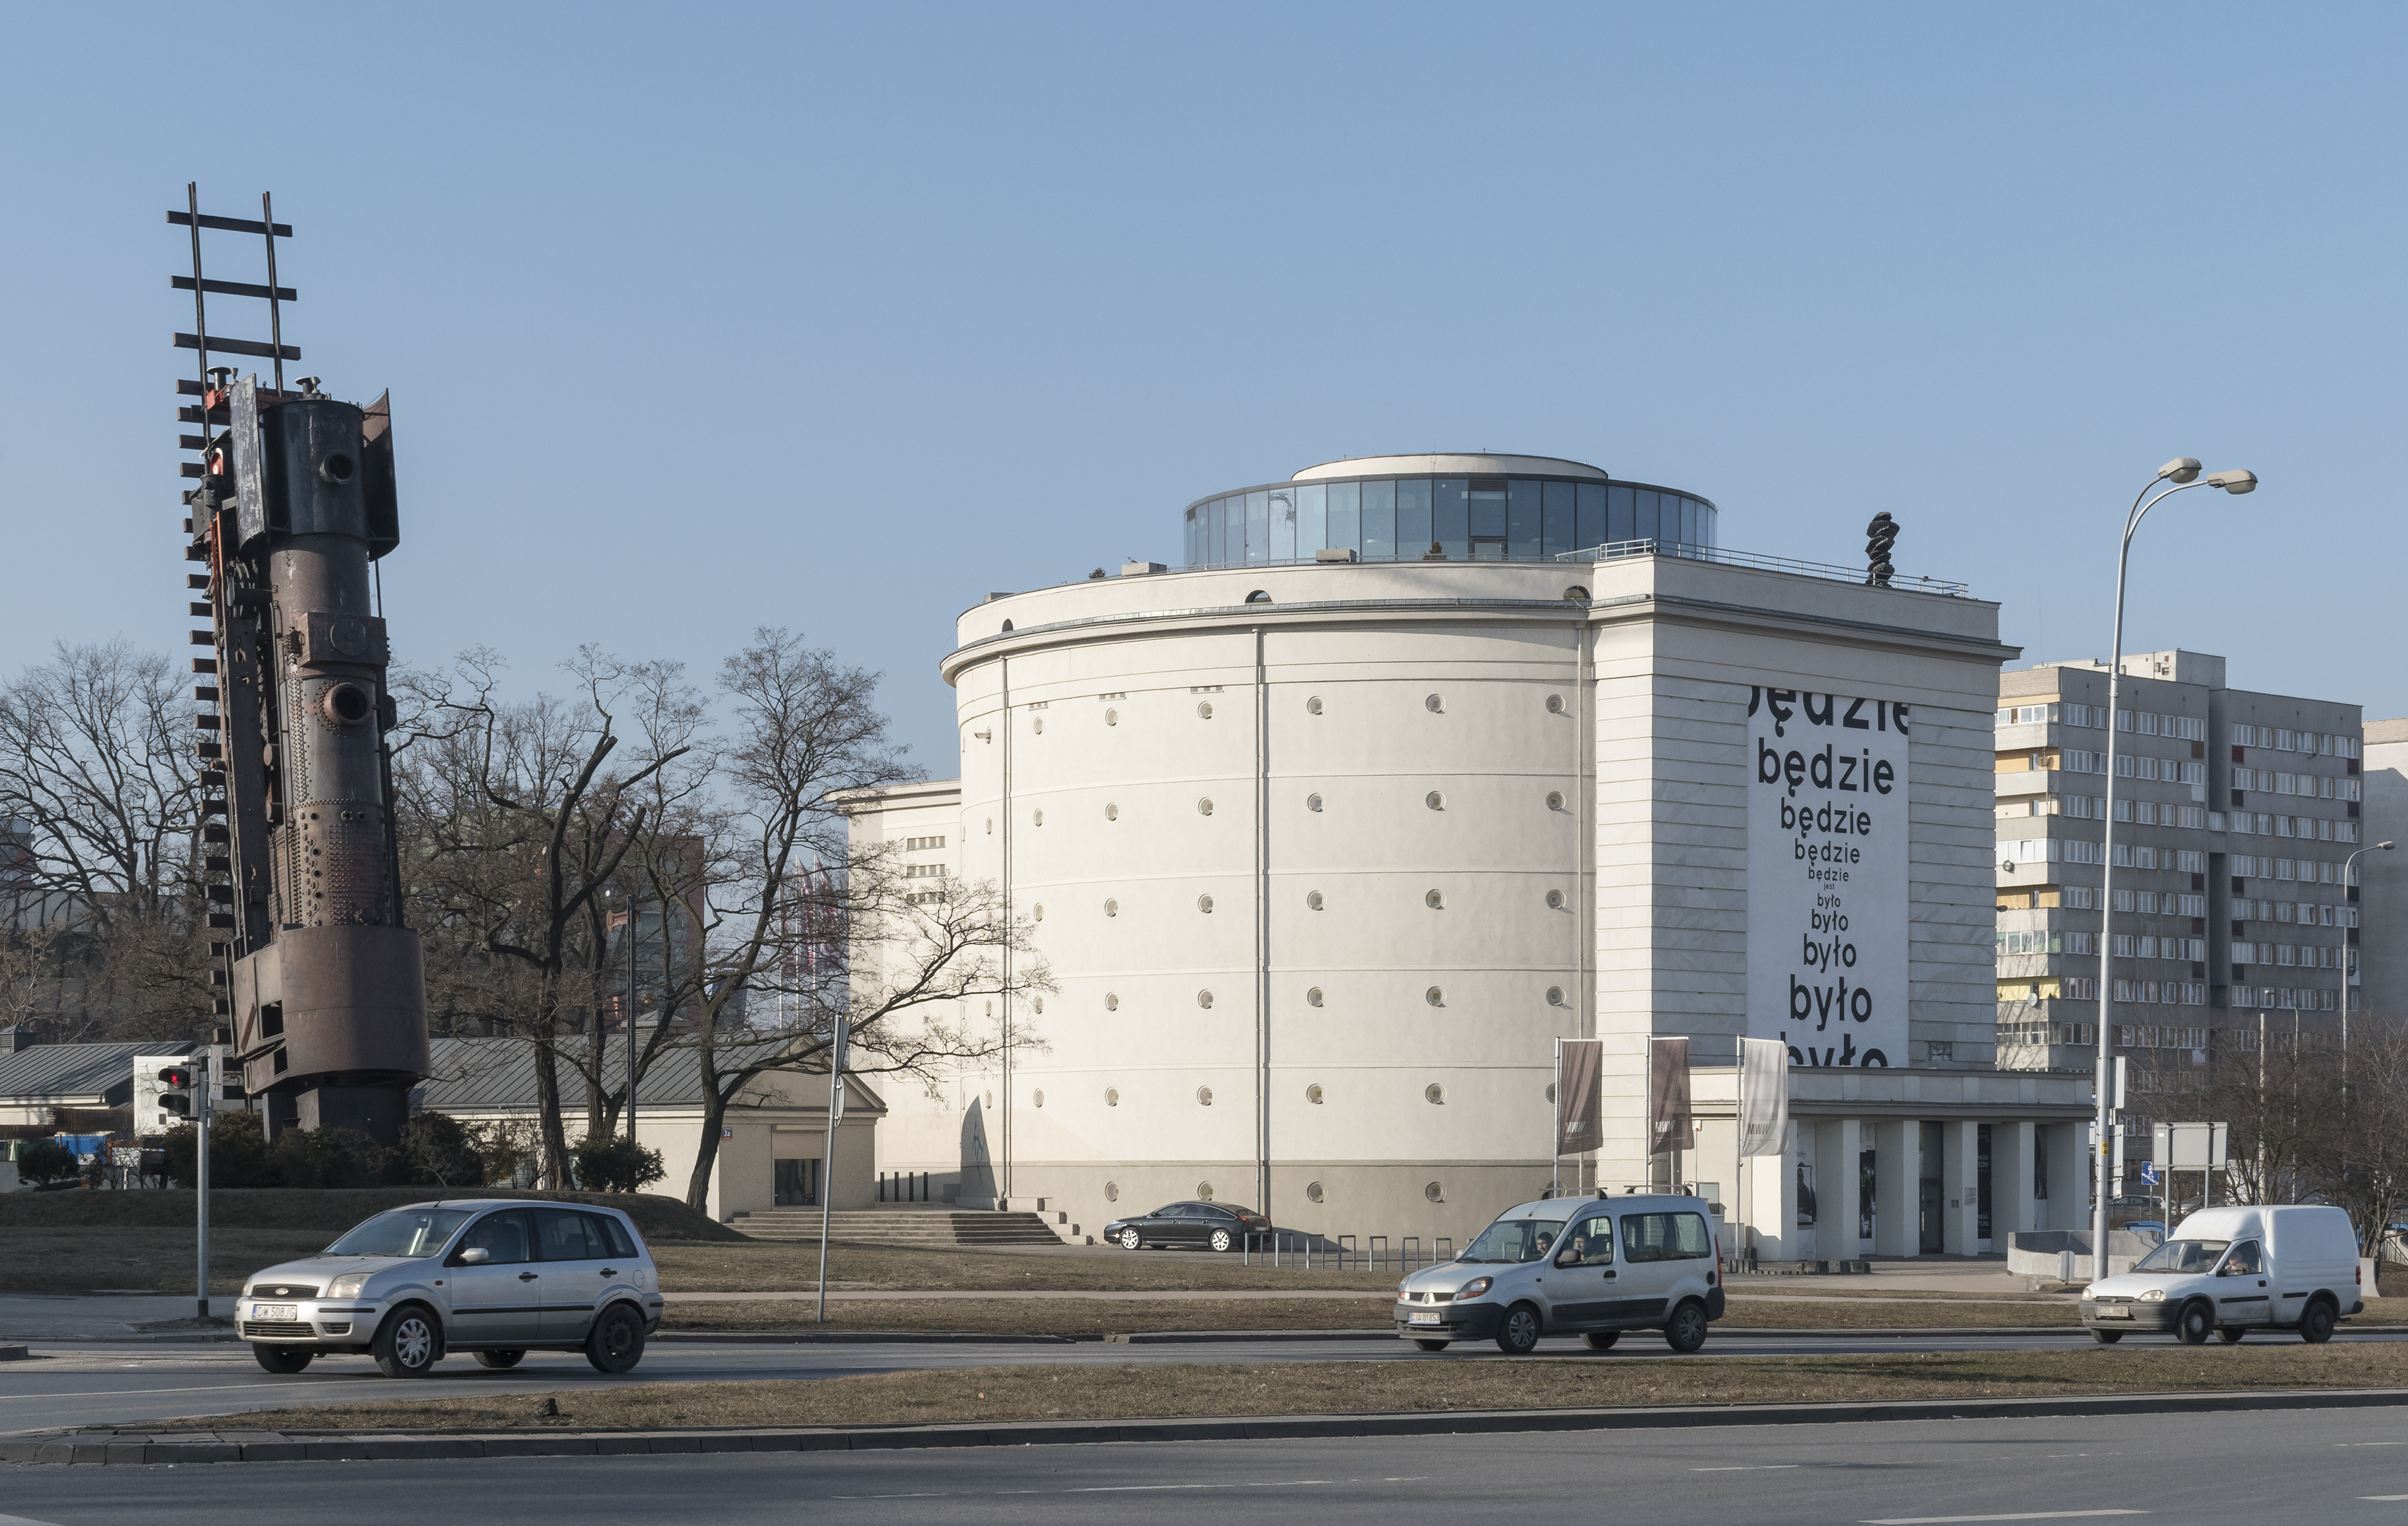 Wrocław Contemporary Museum